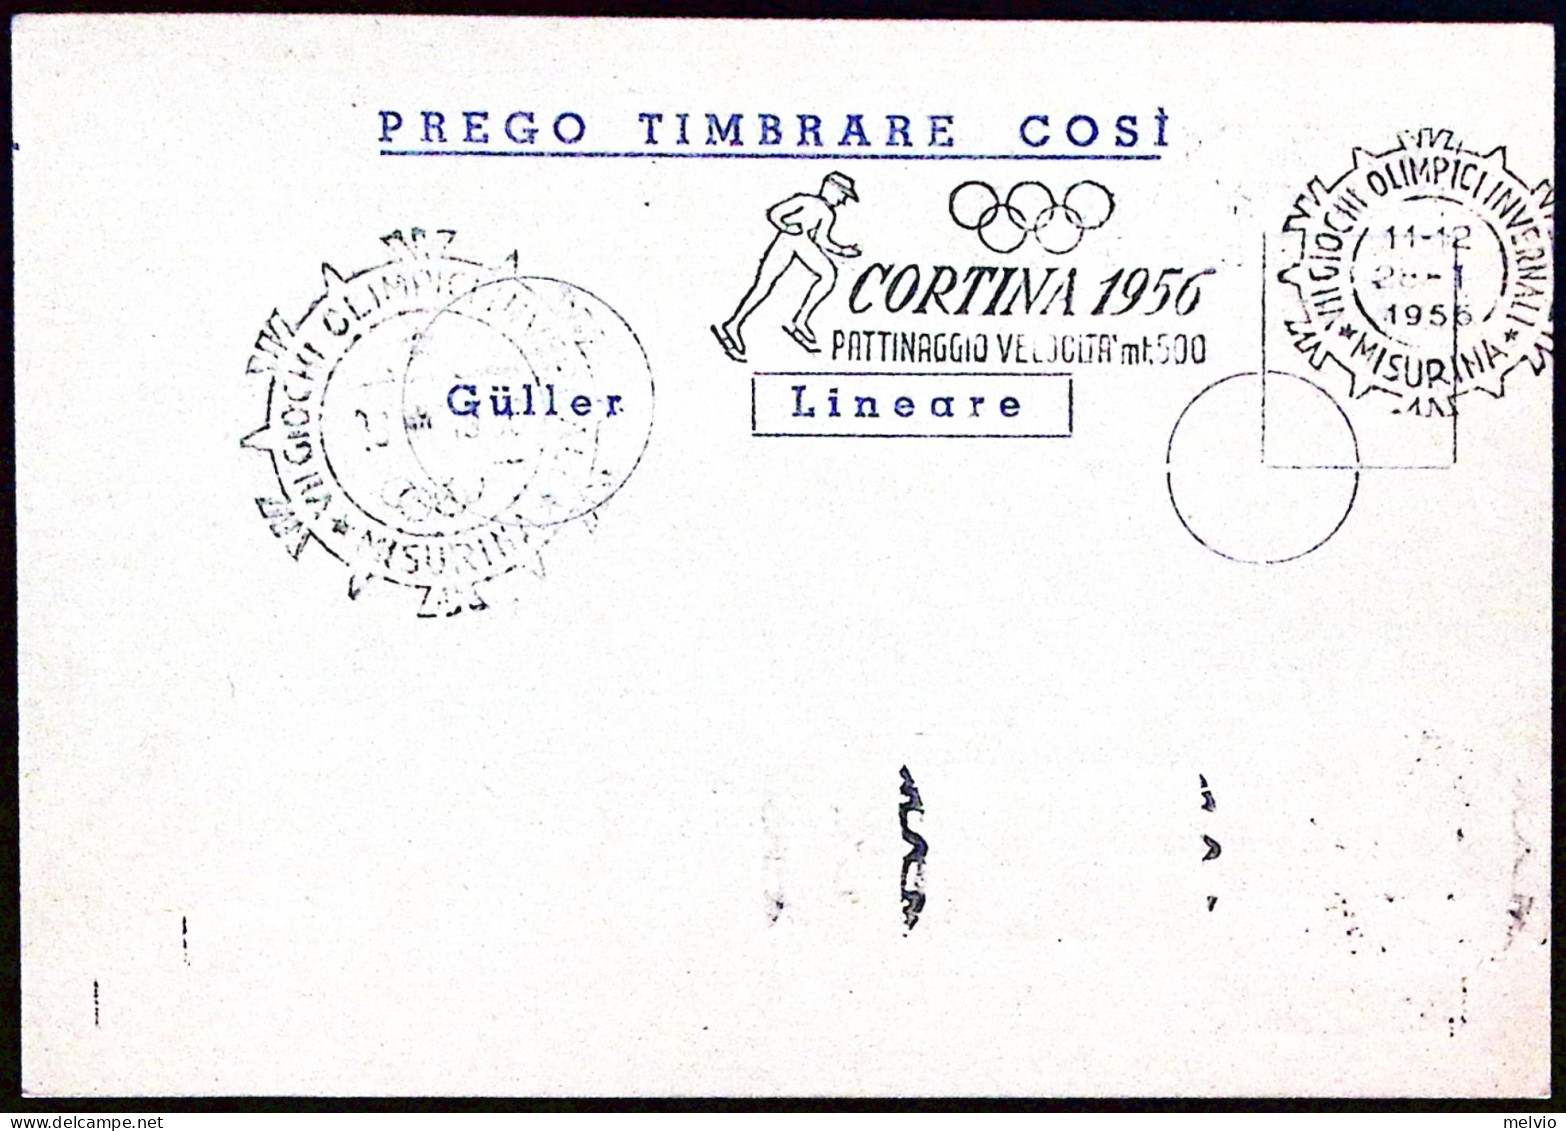 1956-MISURINA PATTINAGGIO VELOCITA' Mt 500 Annullo Targhetta (28.1) Su Cartolina - Manifestazioni